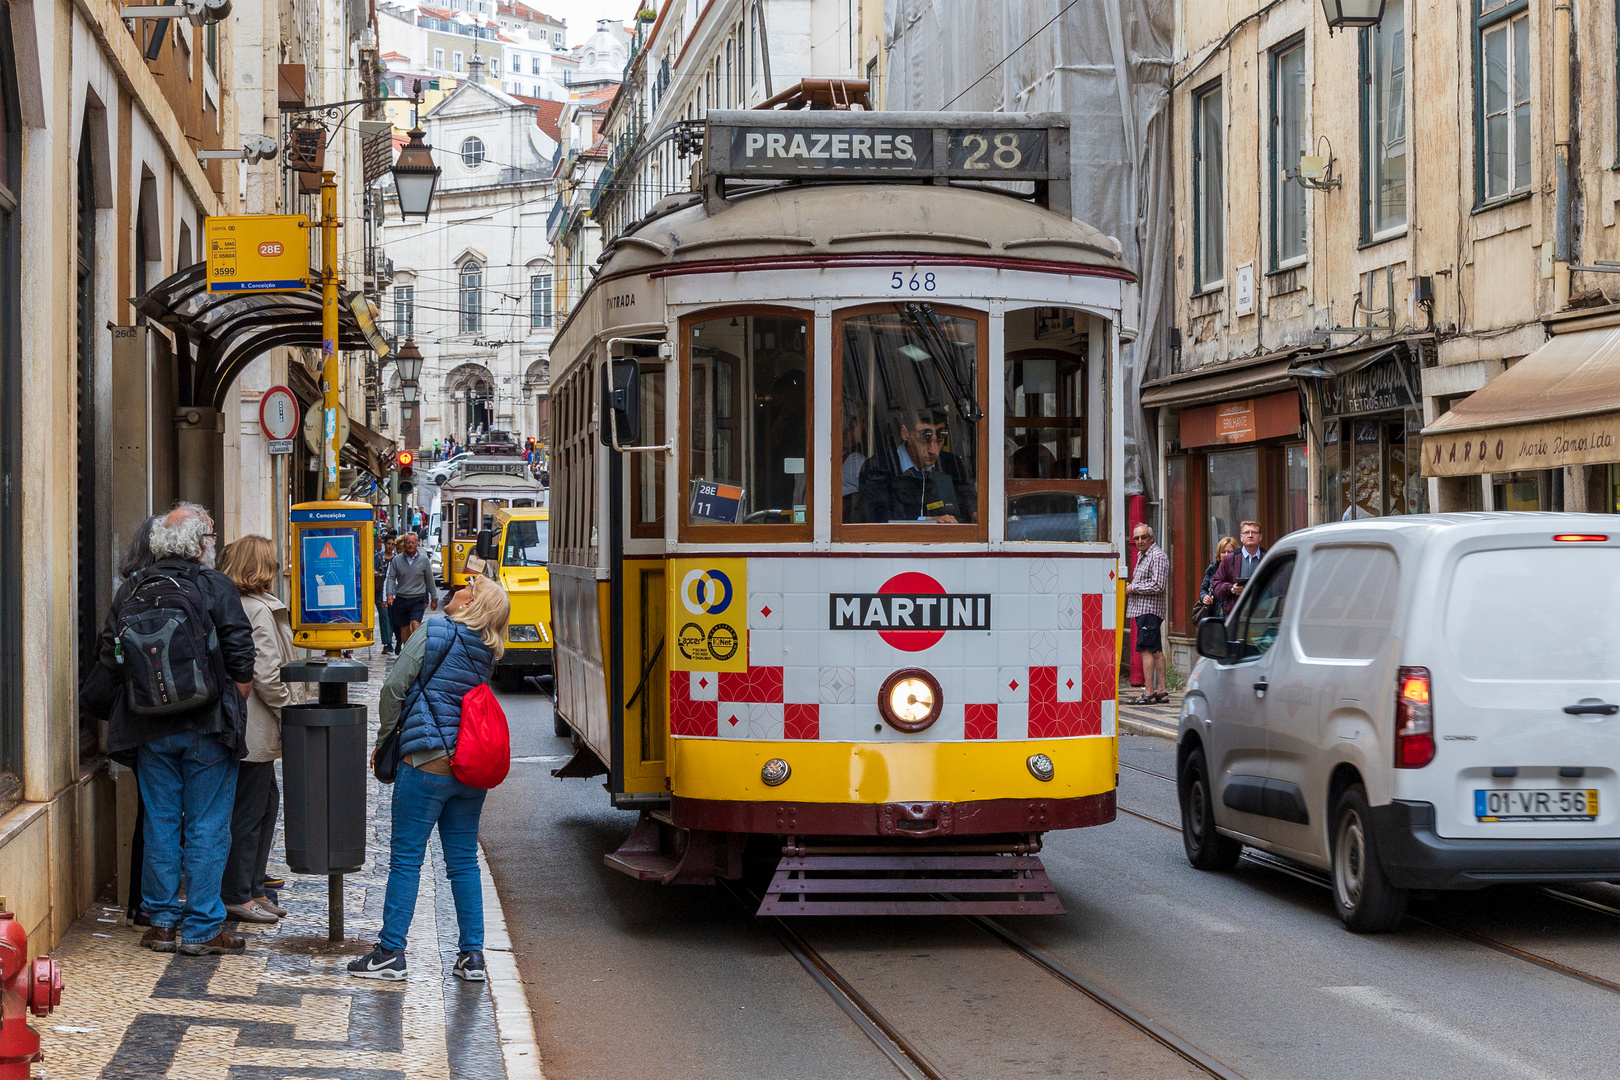 Foto,Stadtrundfahrt mit der Tram Nr. 28, Lissabon